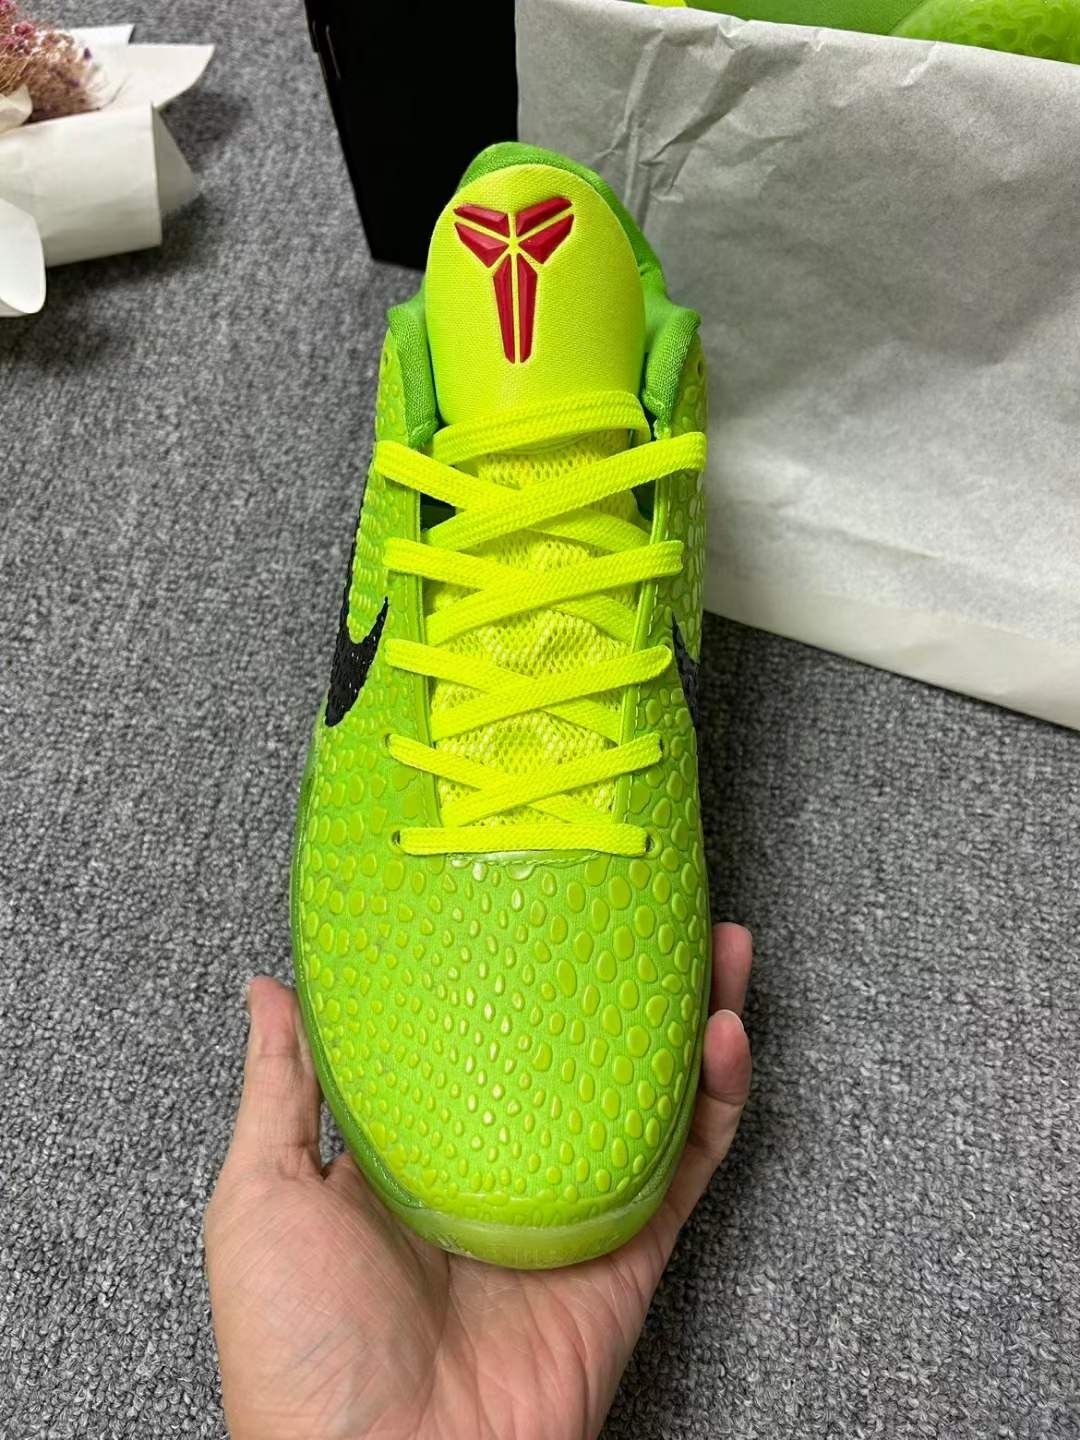 39-48 кросівки чоловічі Nike Kobe 6 Protro Grinch  Гринч баскетбольні